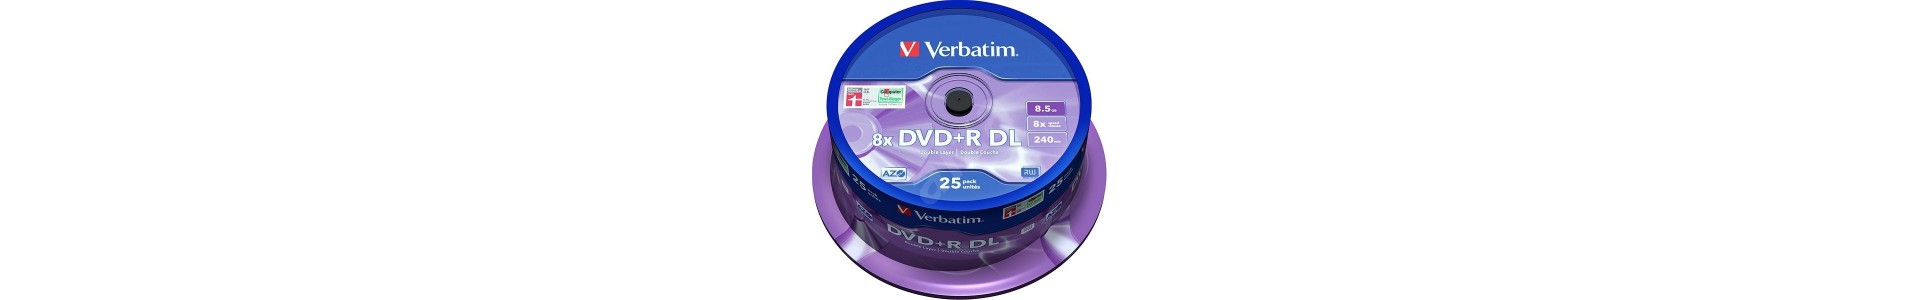 CDs | DVDs